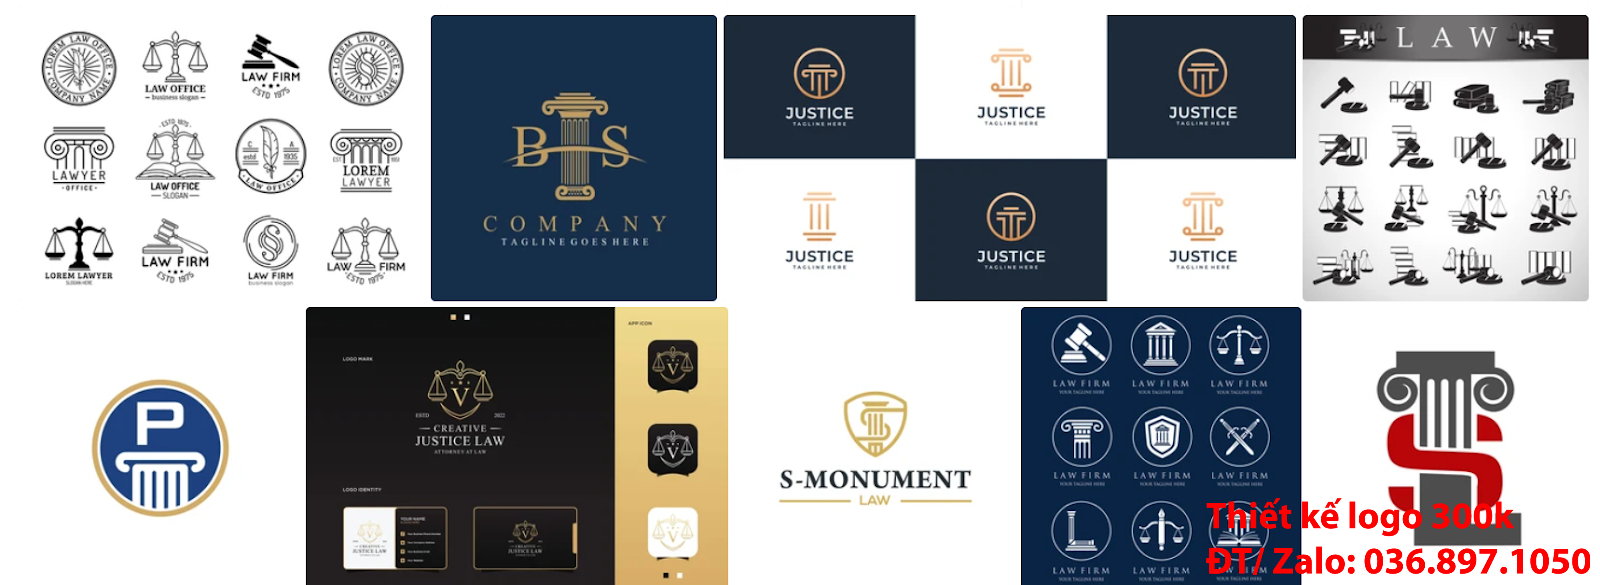 Mẫu logo công ty luật sư đơn giản tinh tế giá rẻ 300k đẹp chất lượng